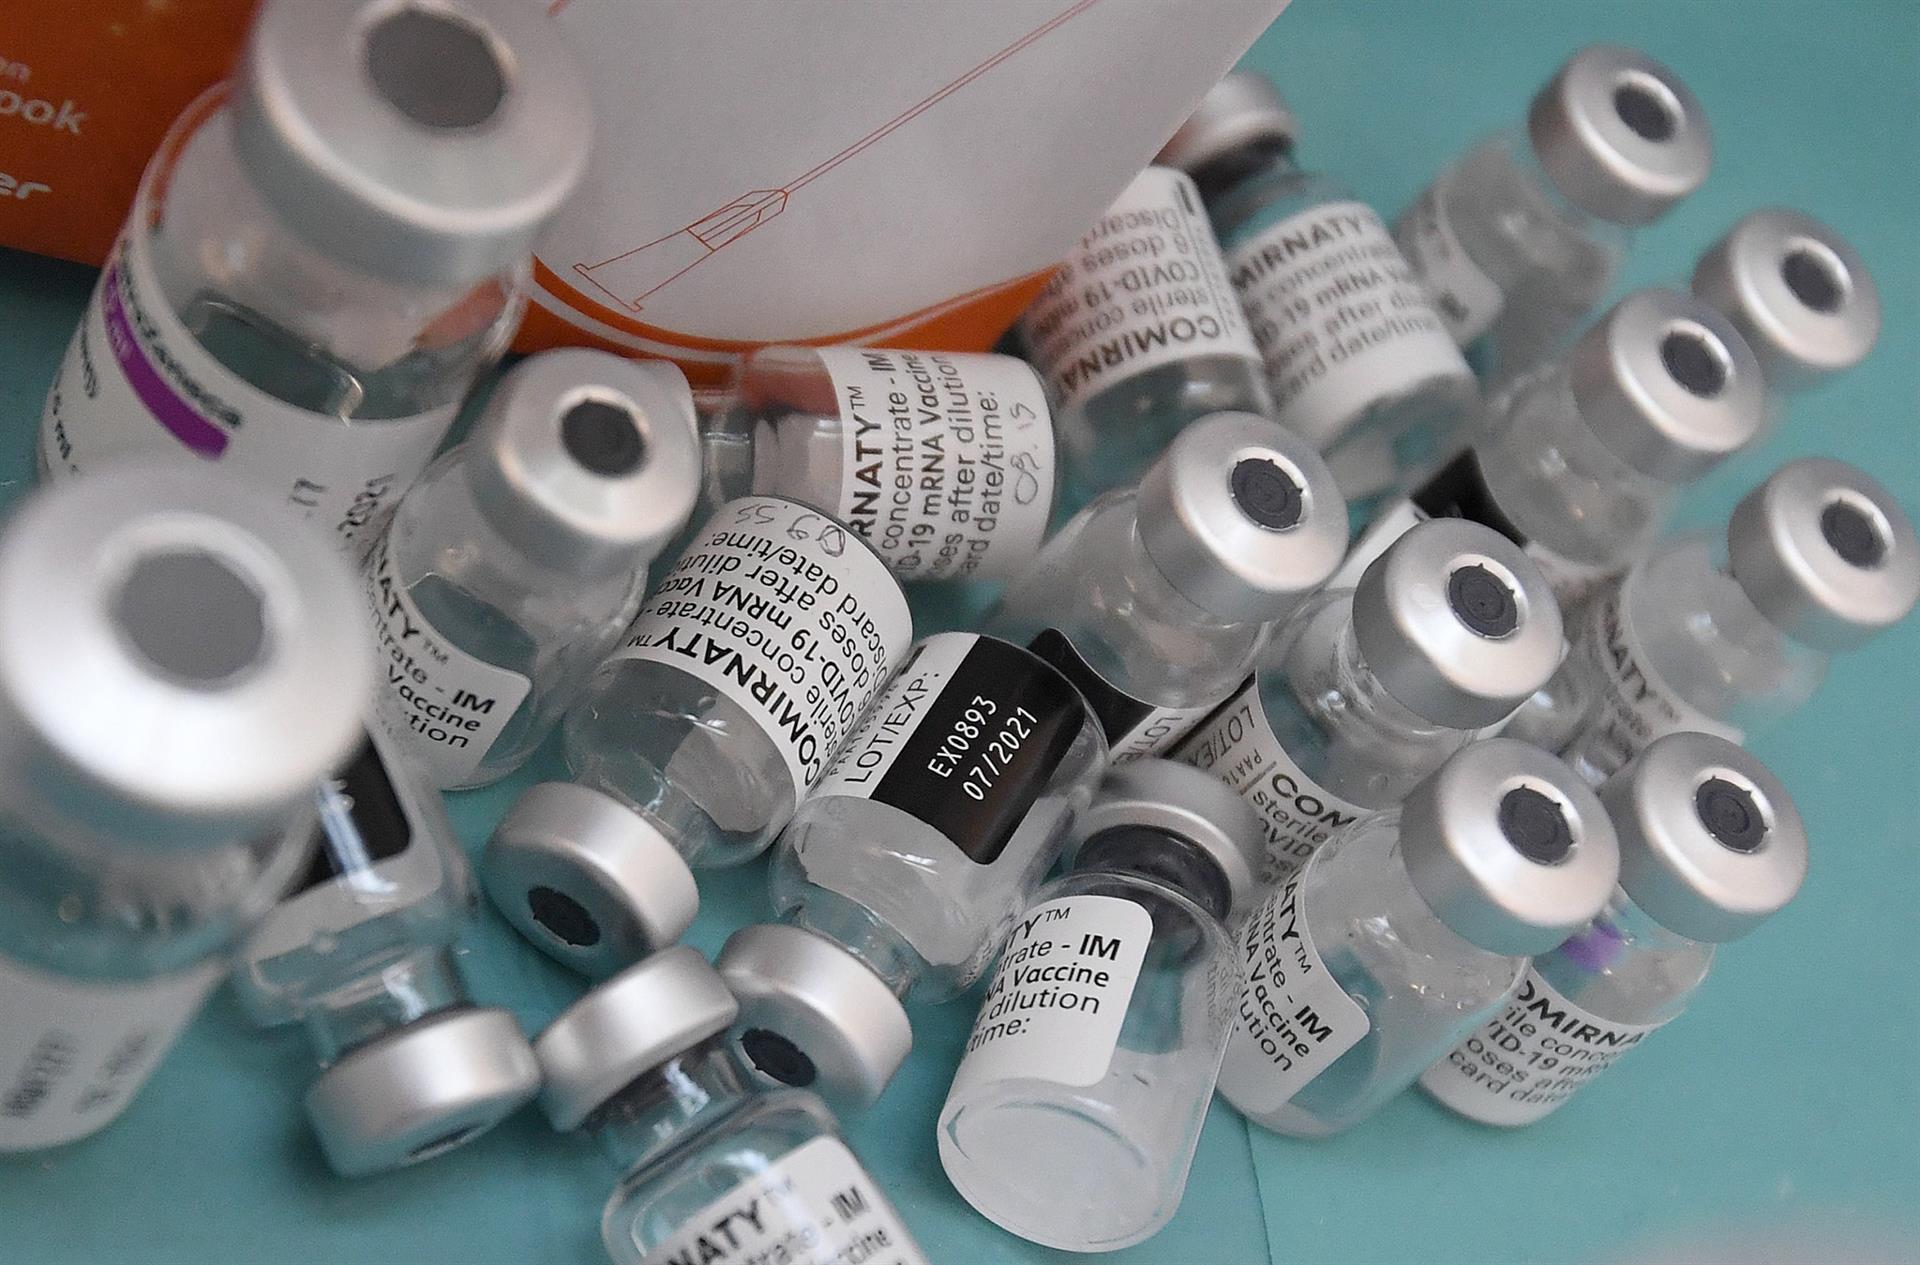 União Europeia abre processo legal contra AstraZeneca por atraso na entrega das vacinas contra Covid-19